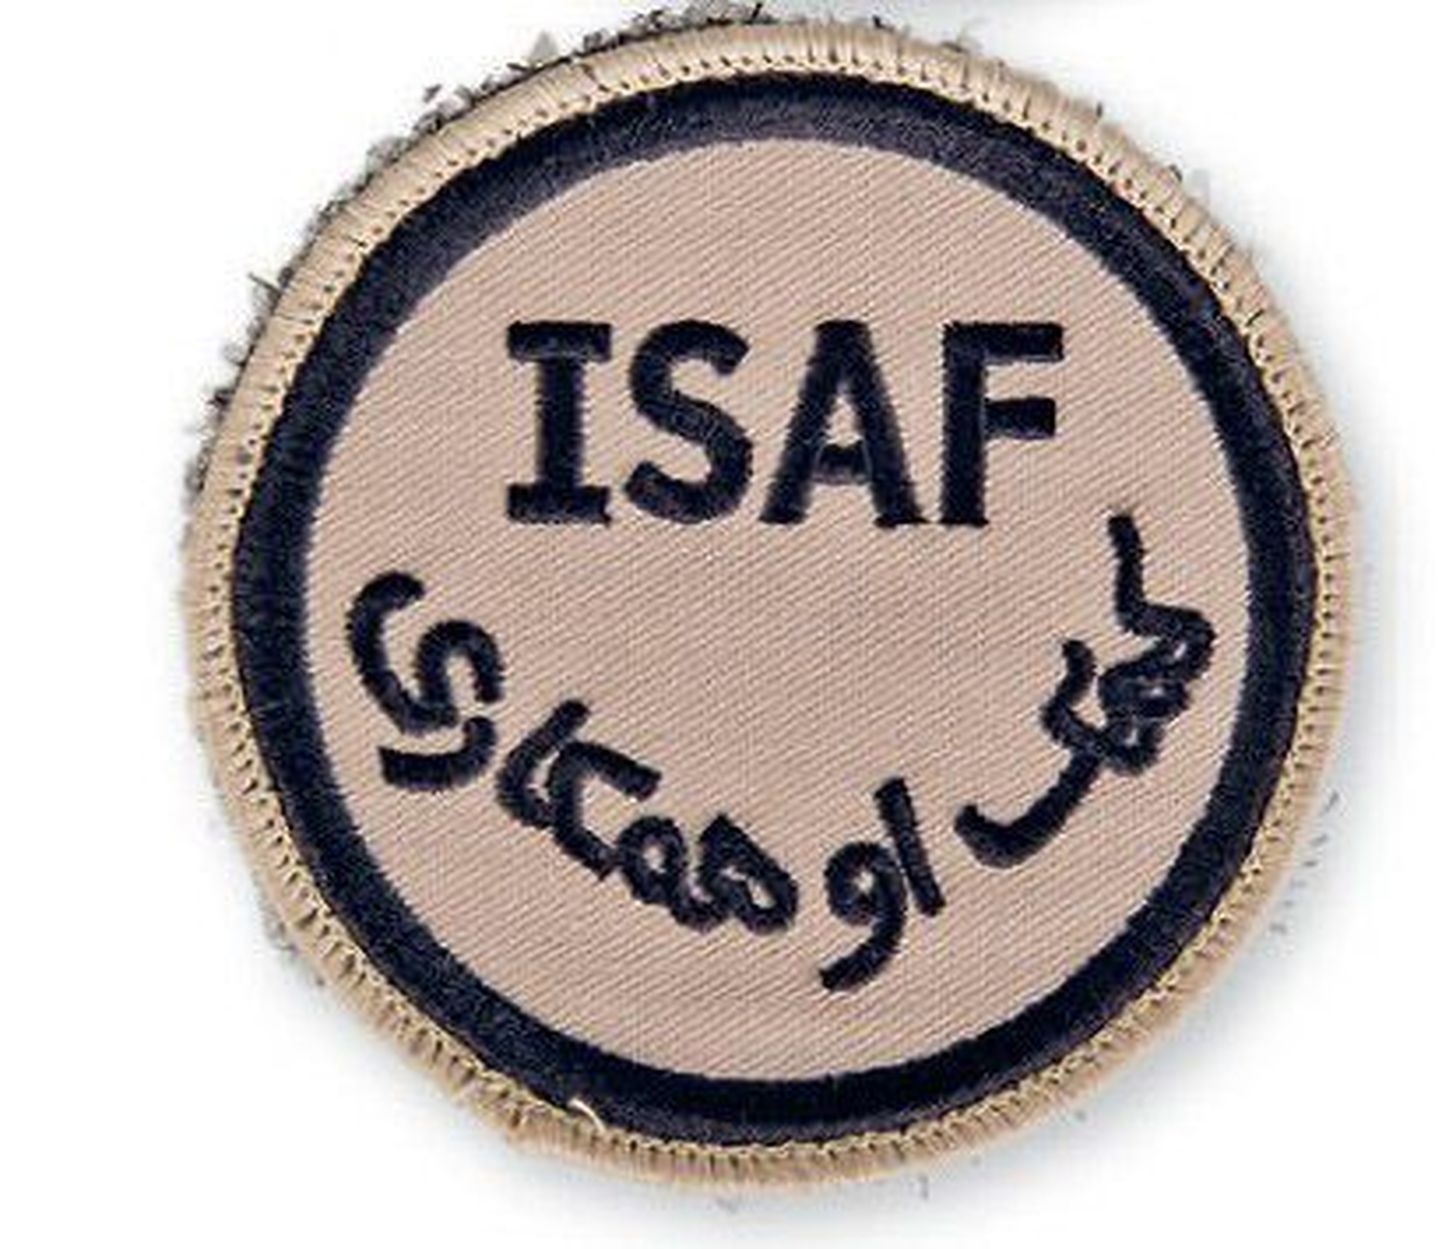 Rahvusvaheliste julgeolekuabijõudude (ISAF) mitteametlik embleem, mille ametliku akronüümi alla on lisatud ka araabia tähestikus selle puštukeelne tõlge.